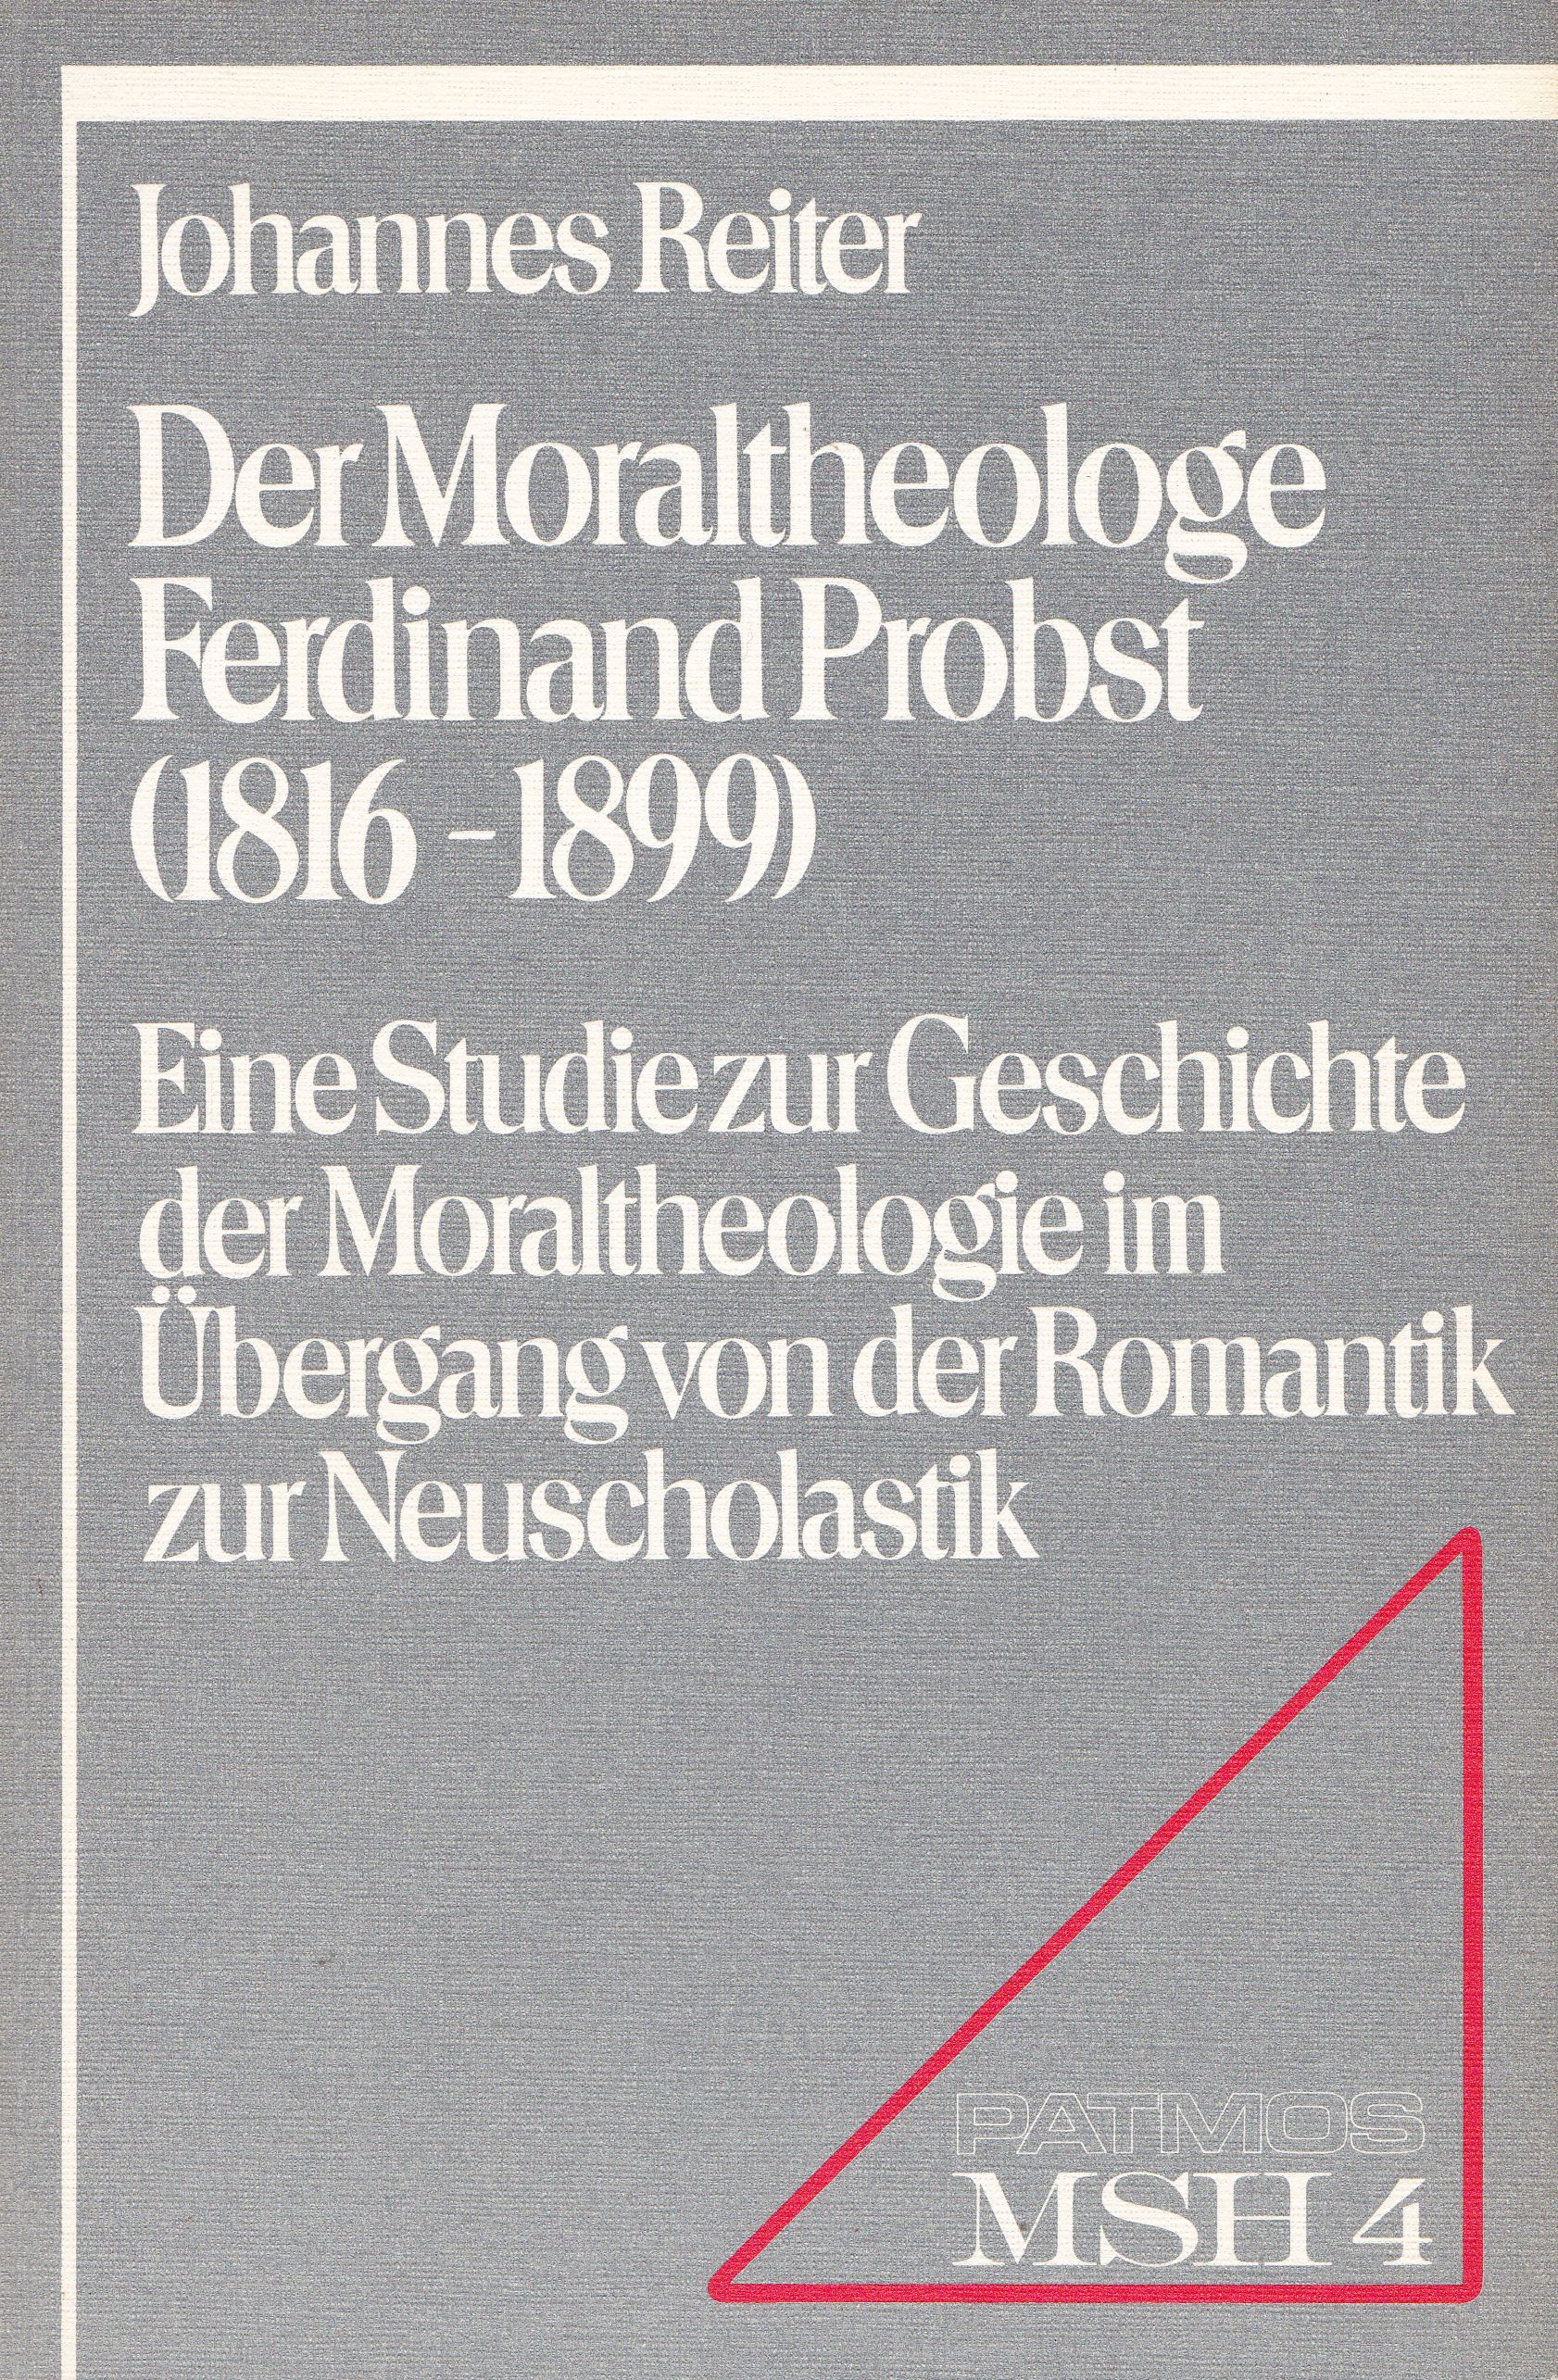 Reiter, Johannes  Der Moraltheologe Ferdinand Probst (1816 - 1899). Eine Studie zur Geschichte der Moraltheologie im Übergang von der Romantik zur Neuscholastik. 